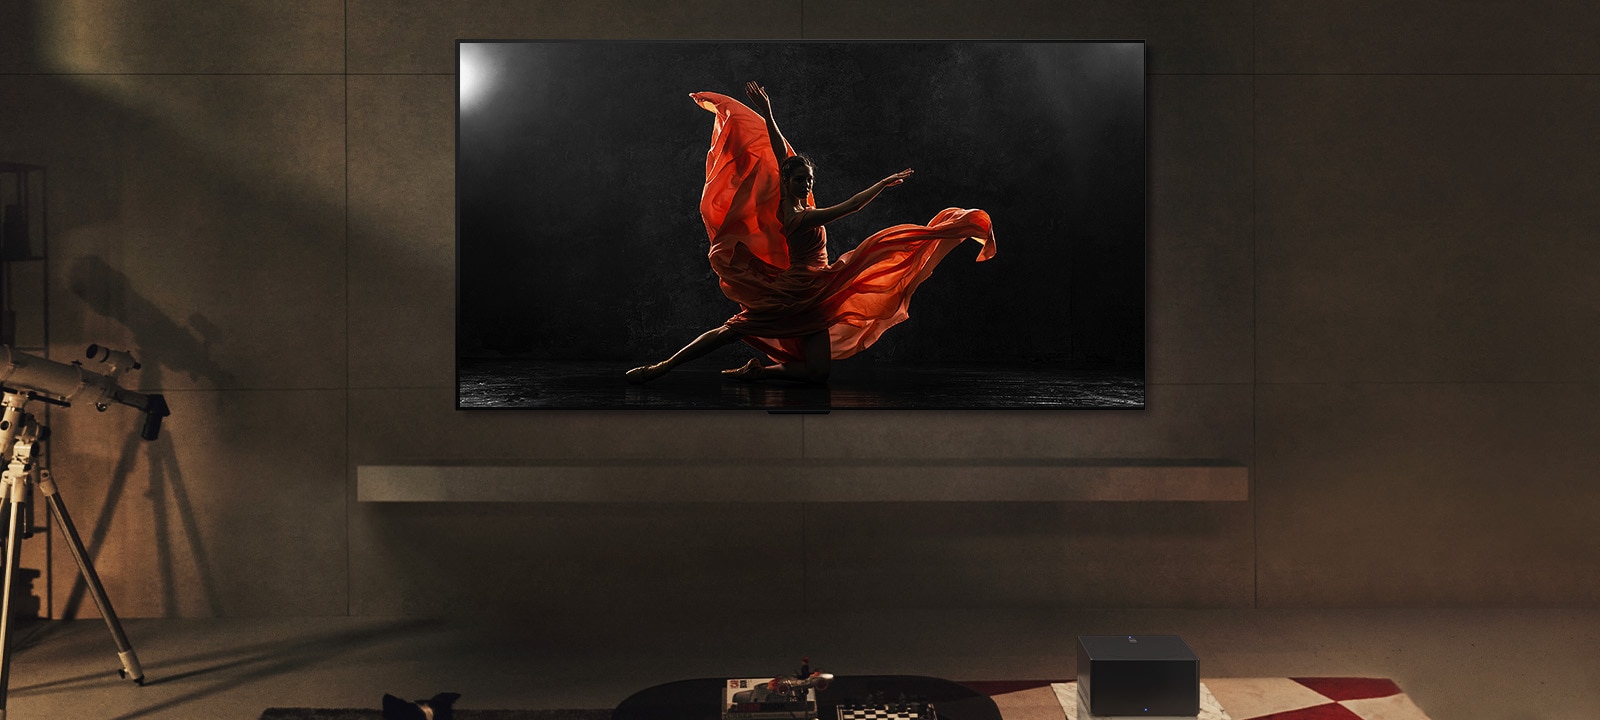 LG SIGNATURE OLED M4 y LG Soundbar en un espacio moderno durante la noche. La imagen en pantalla de una bailarina en un escenario oscuro se muestra con los niveles de brillo ideales.